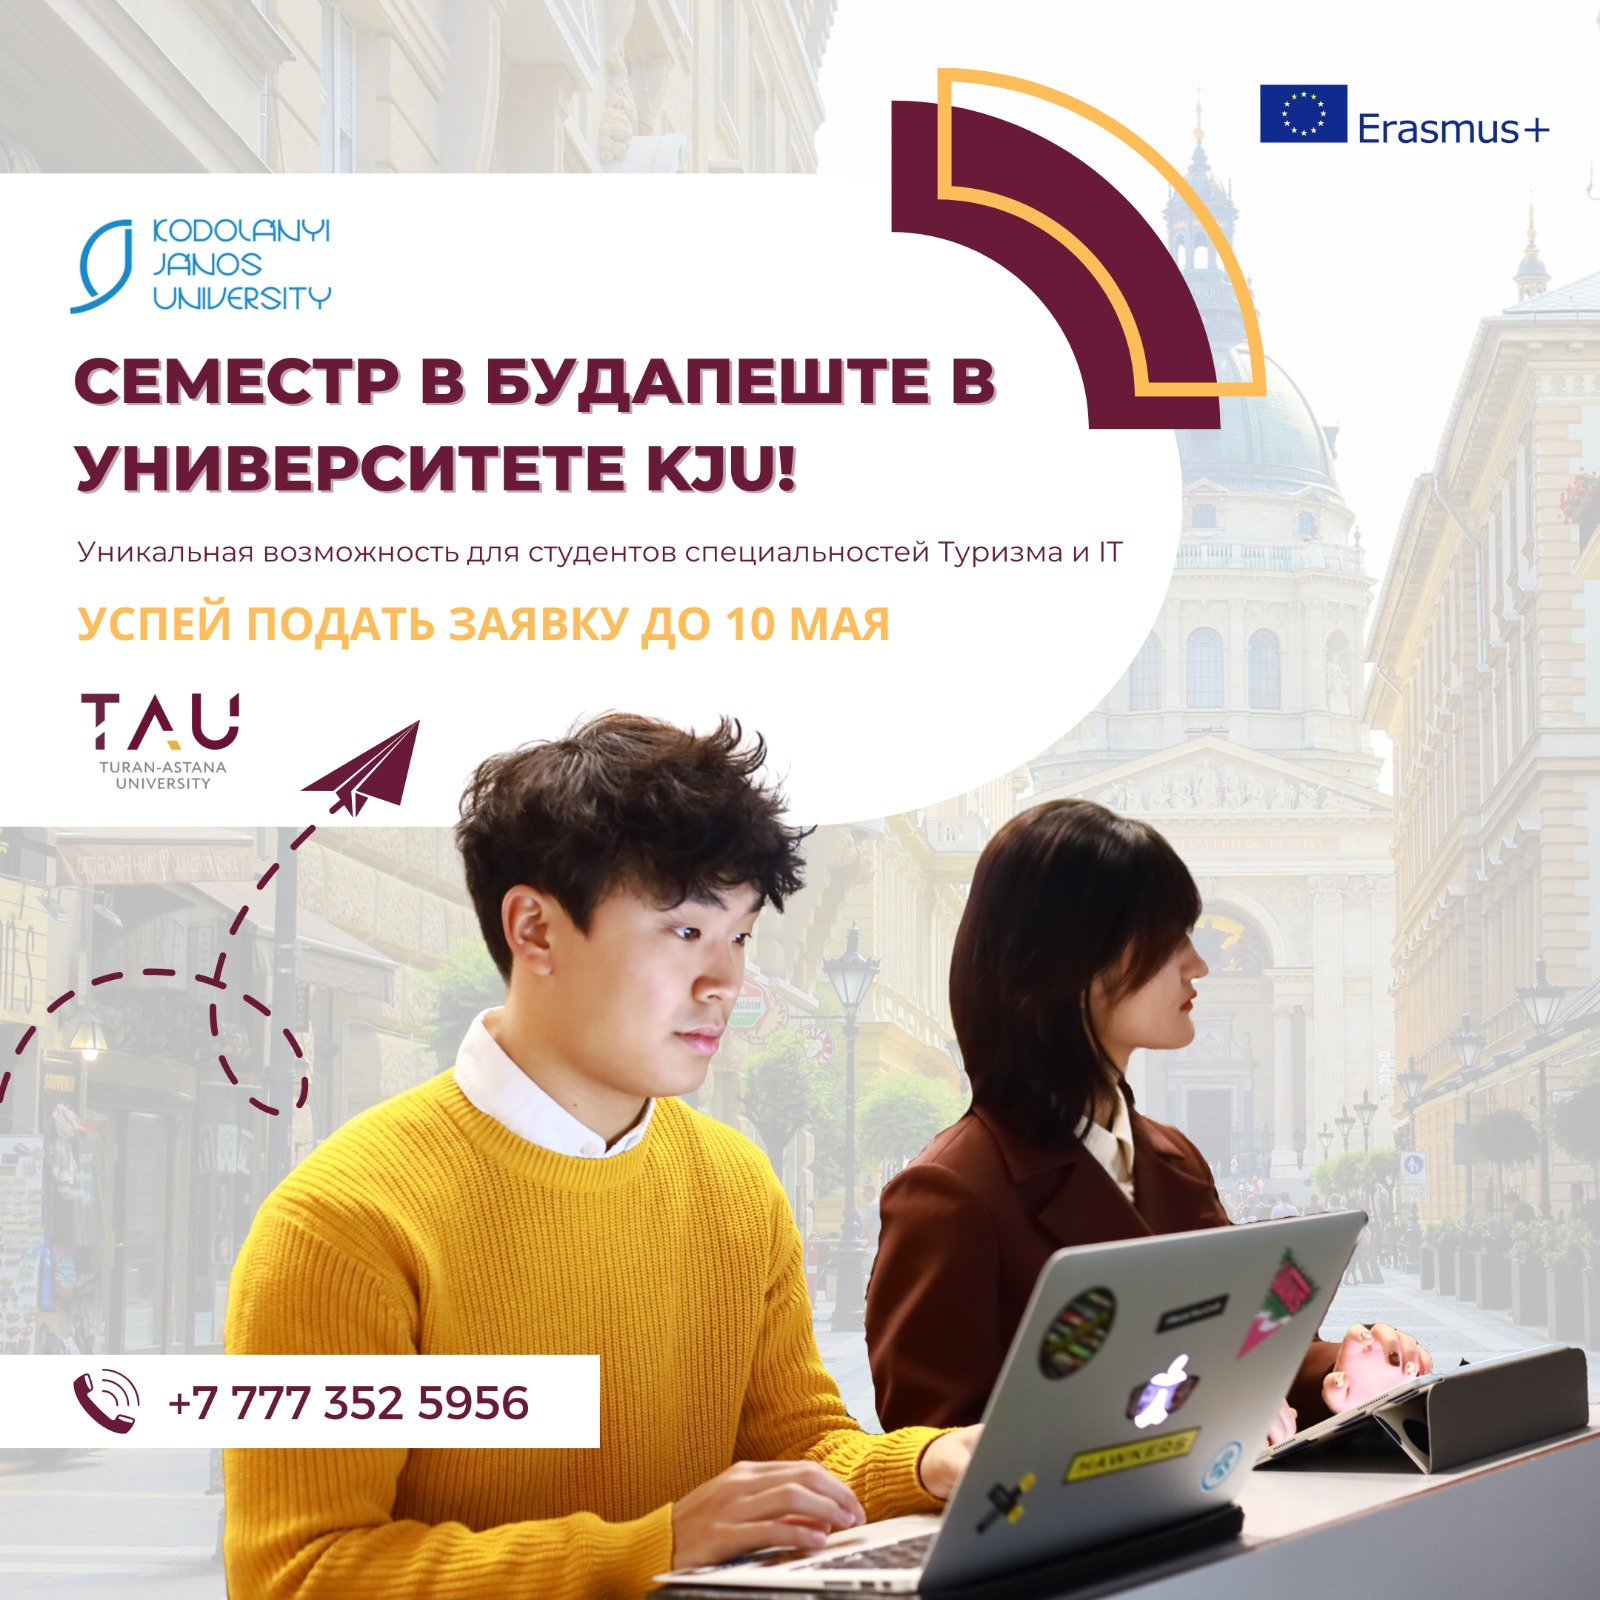 ERASMUS+ Academic Mobility Program: Kodolanyi Janos University (Hungary)